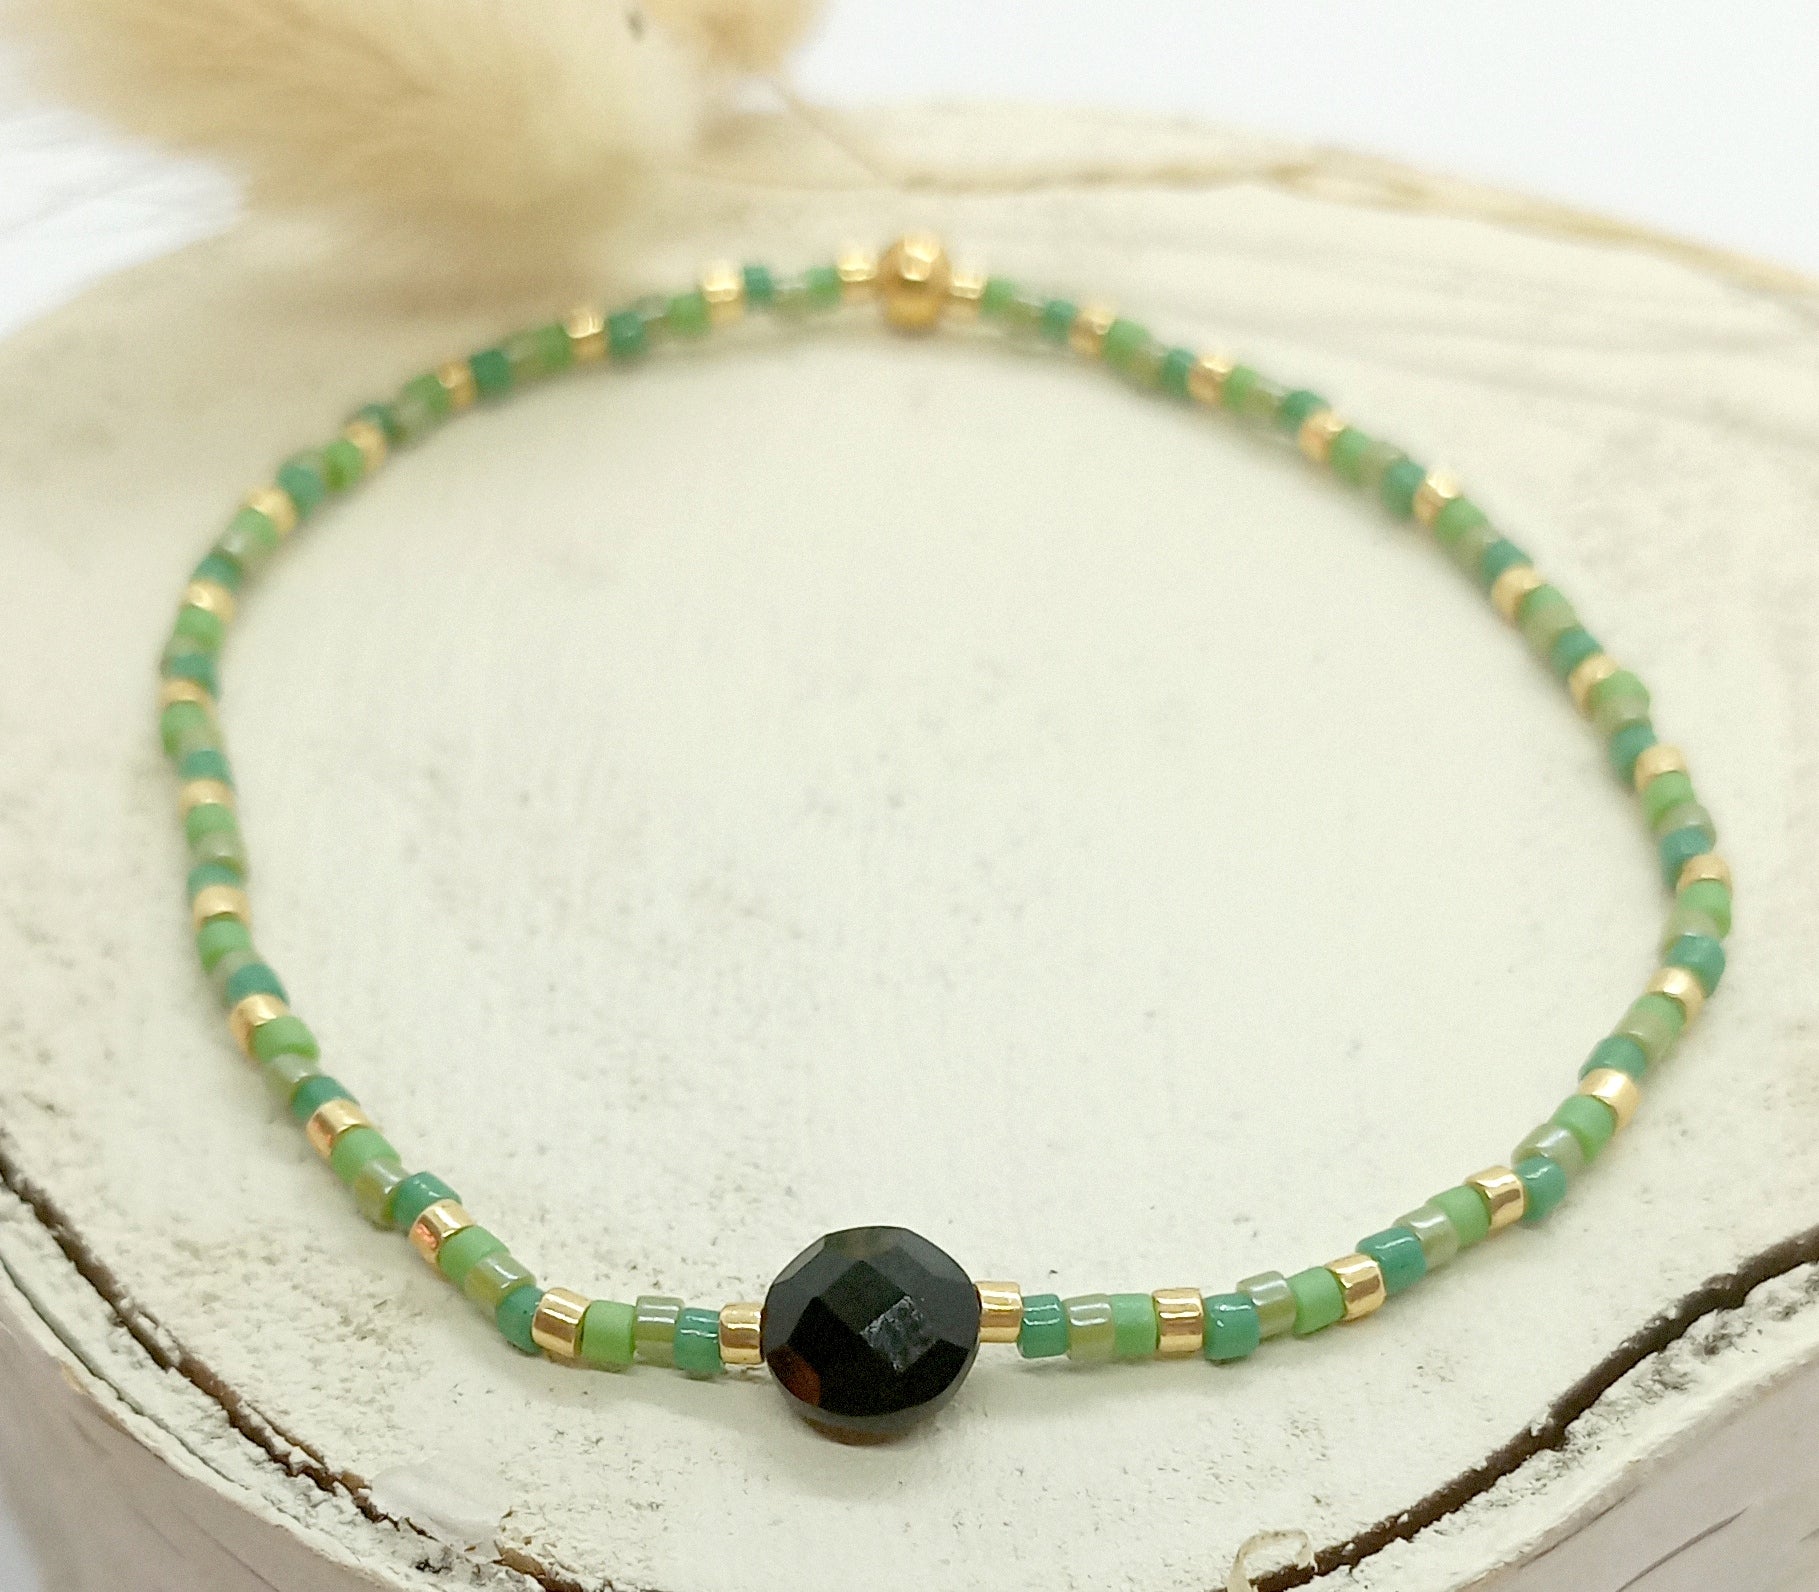 Bracelet en perles miyuki vertes et dorées avec une pierre centrale en onyx. Le bracelet est posé sur un rond de vois écru. Des fleurs séchées en arrière plan.